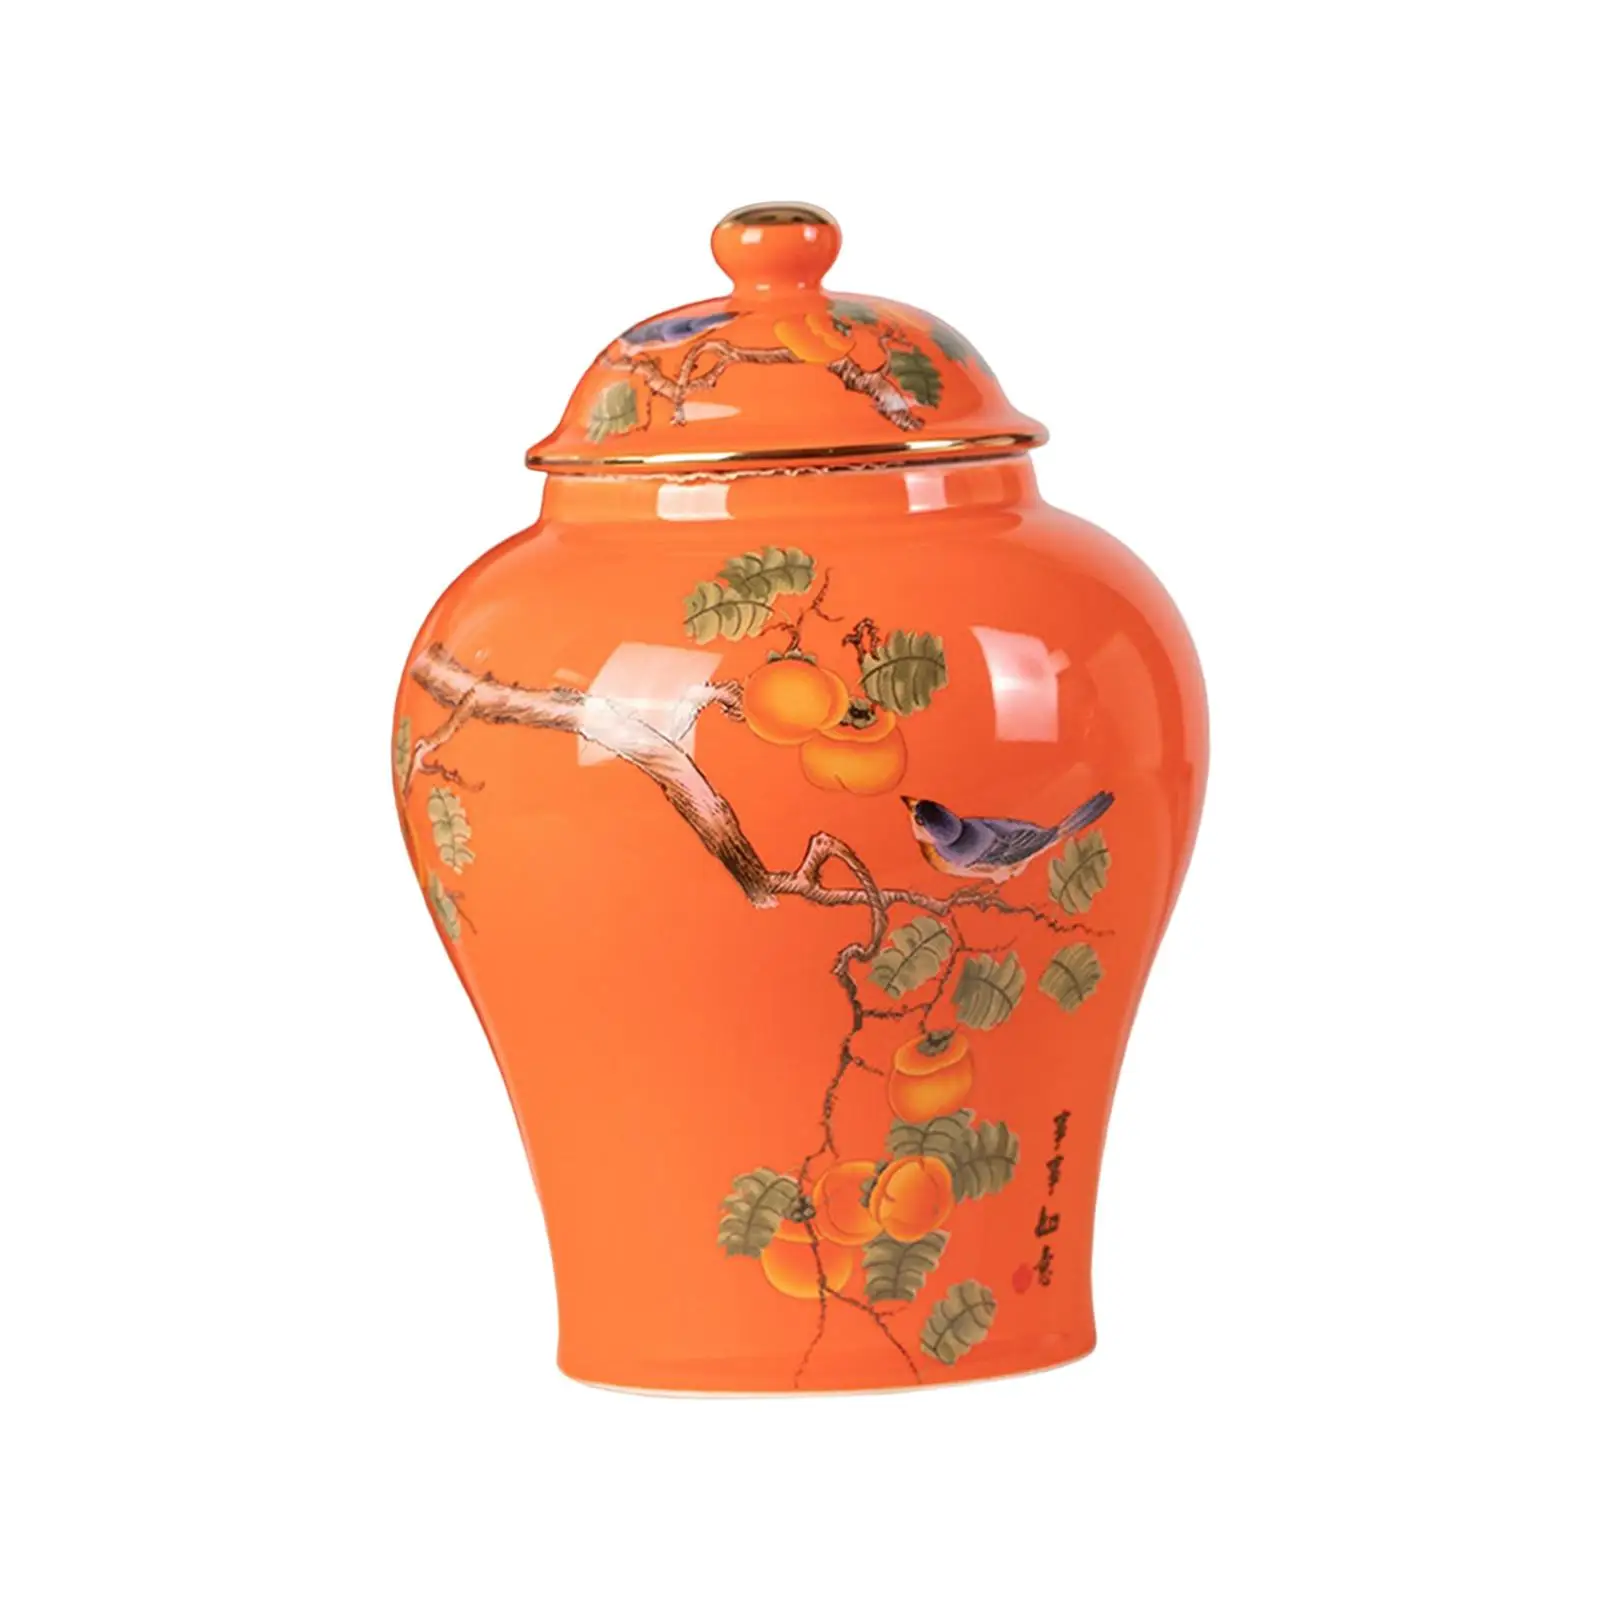 Flower Vase Tea Tin Flowerpot Ceramic Ginger Jars for Kitchen Bedroom Office